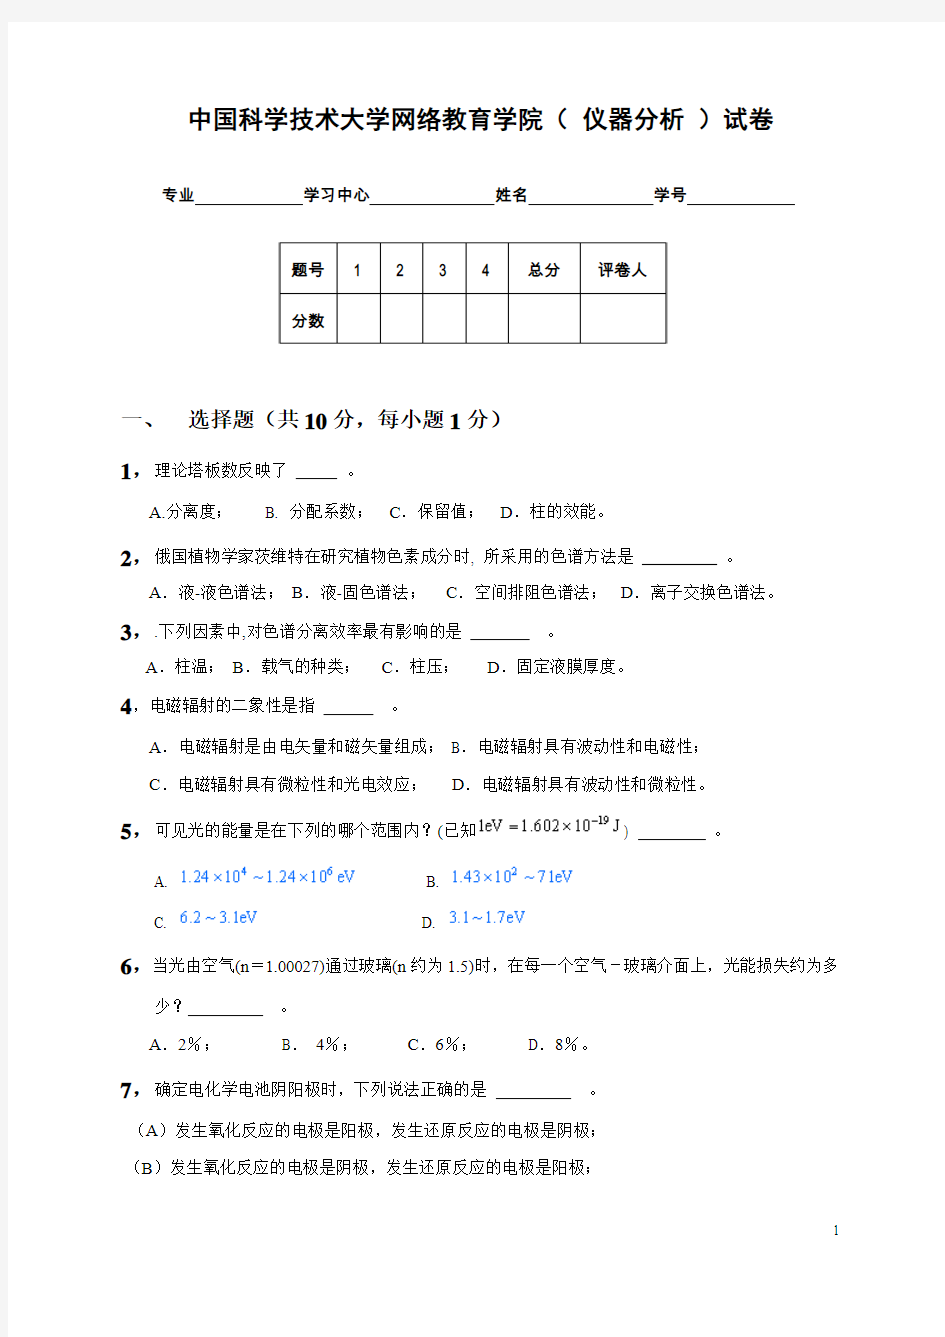 中国科学技术大学网络教育学院(仪器分析)试卷